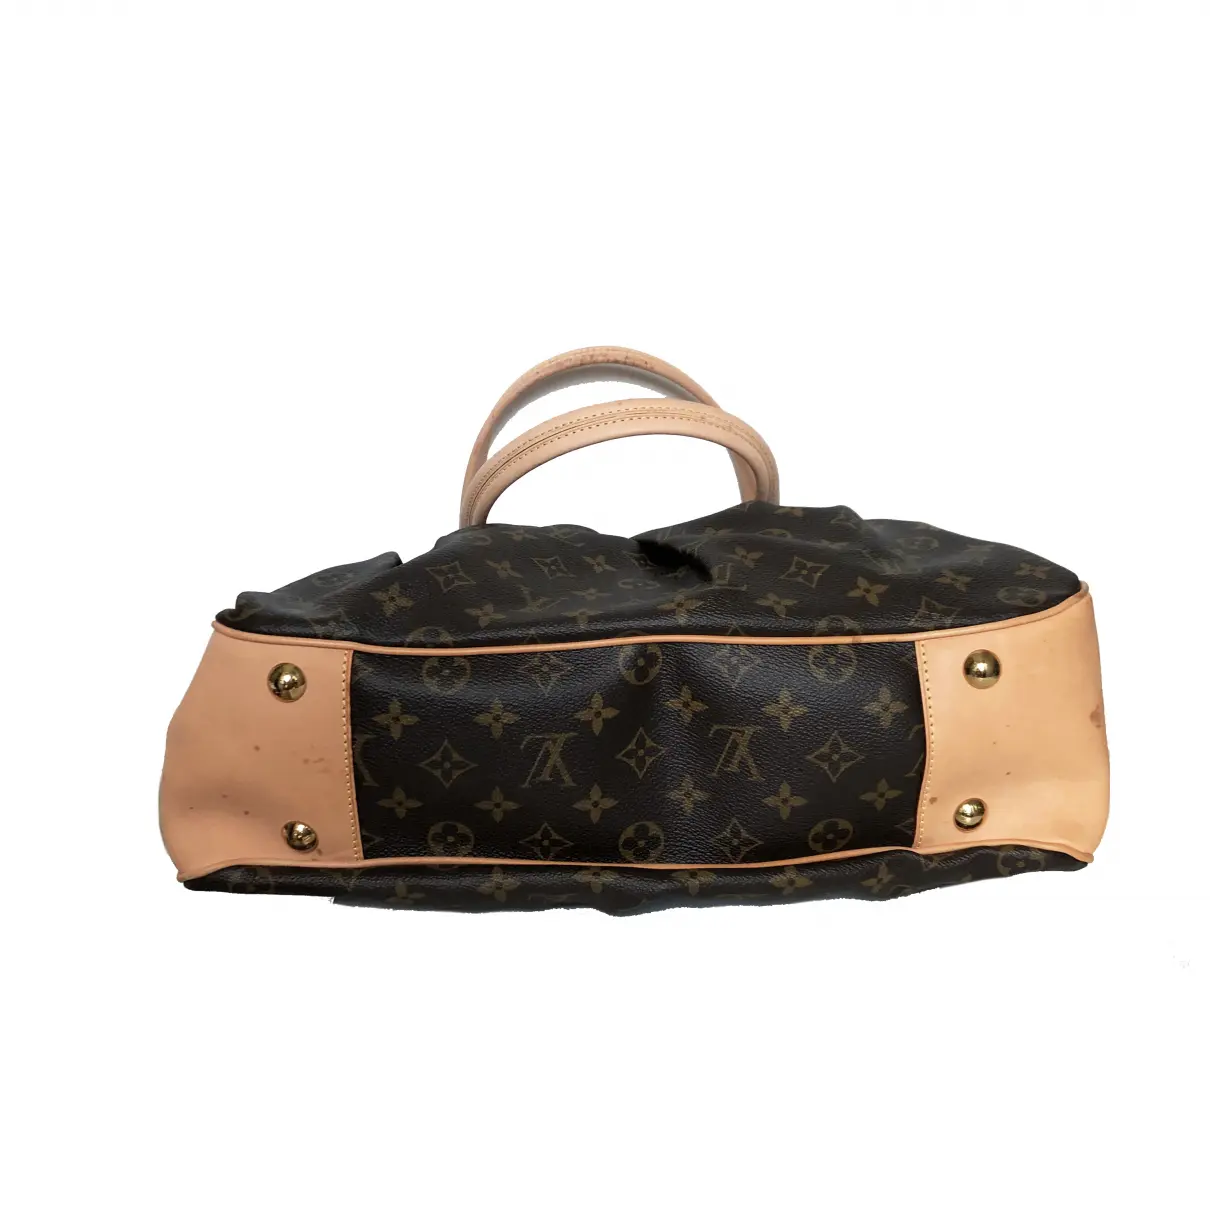 Boetie cloth handbag Louis Vuitton